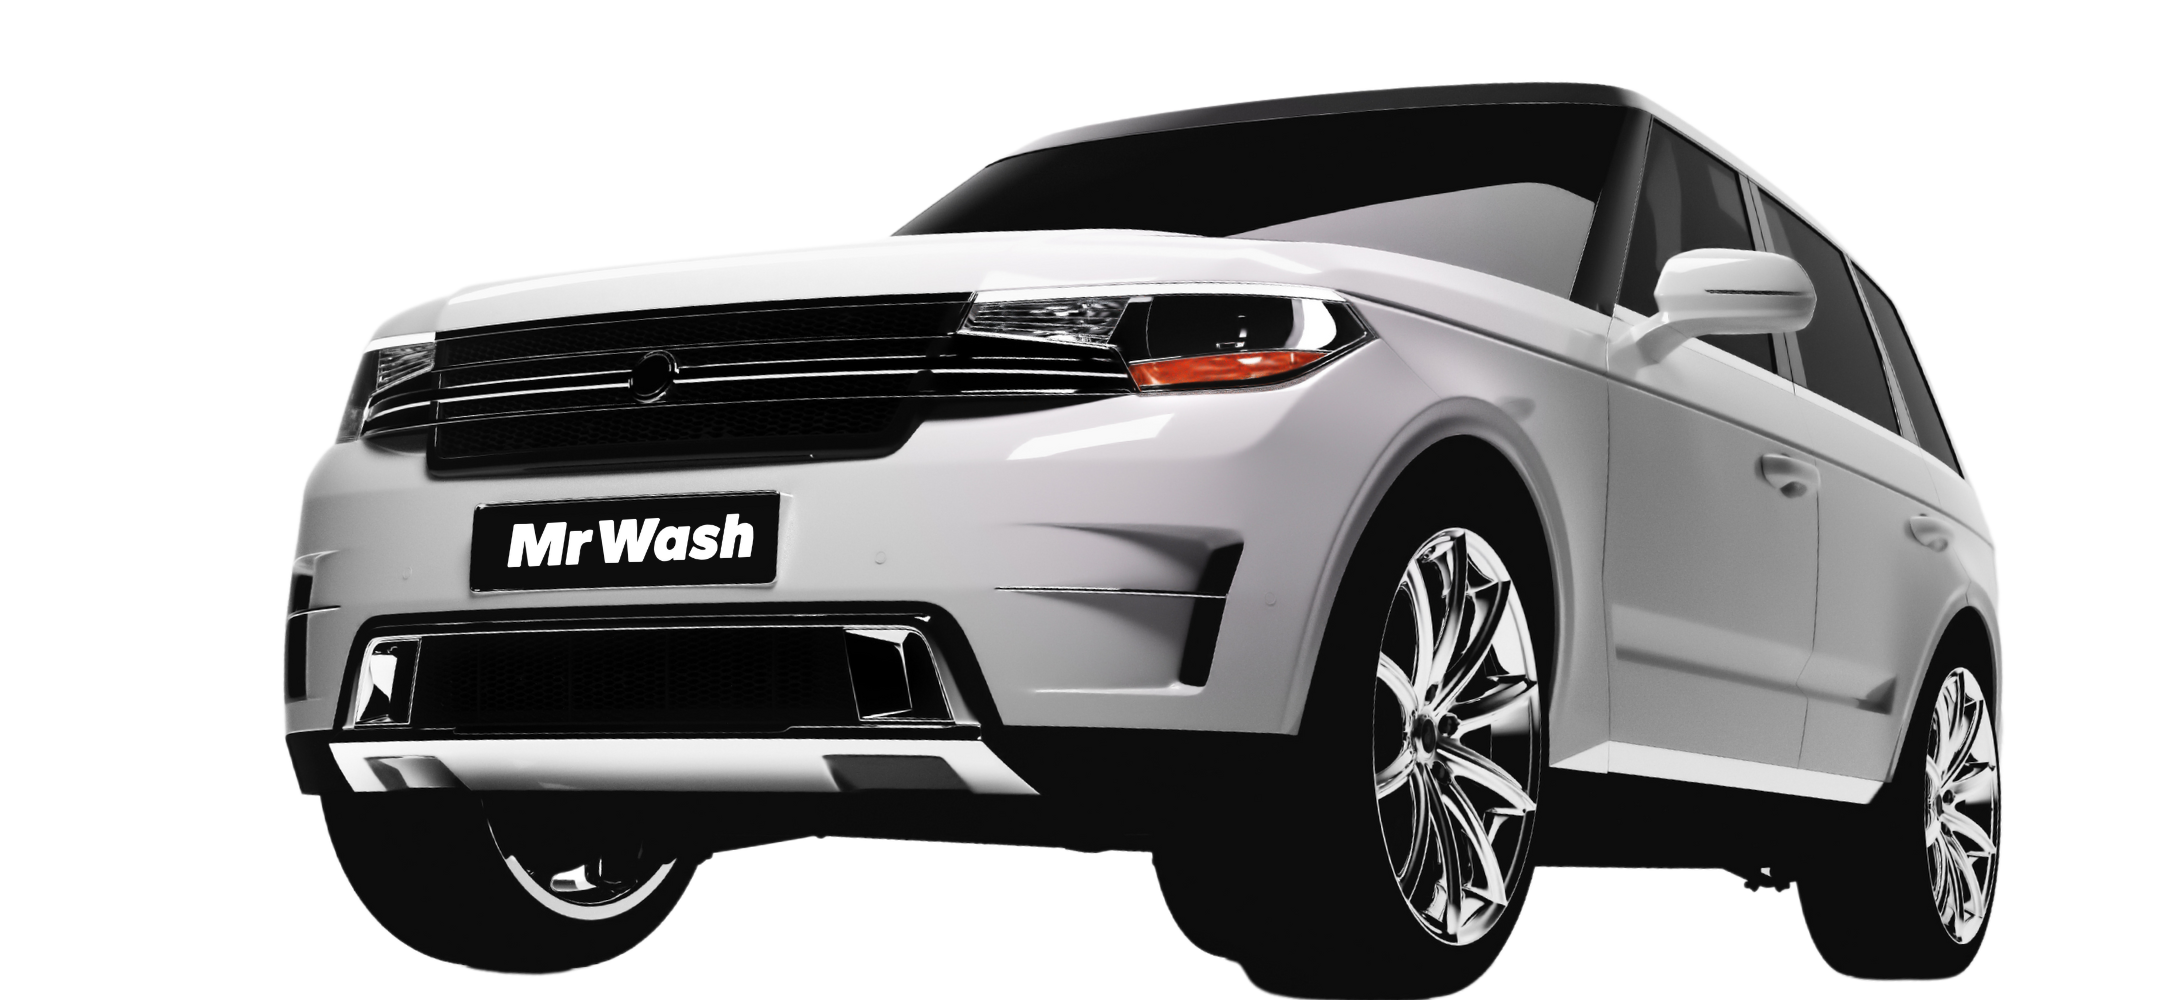 Free Car Wash